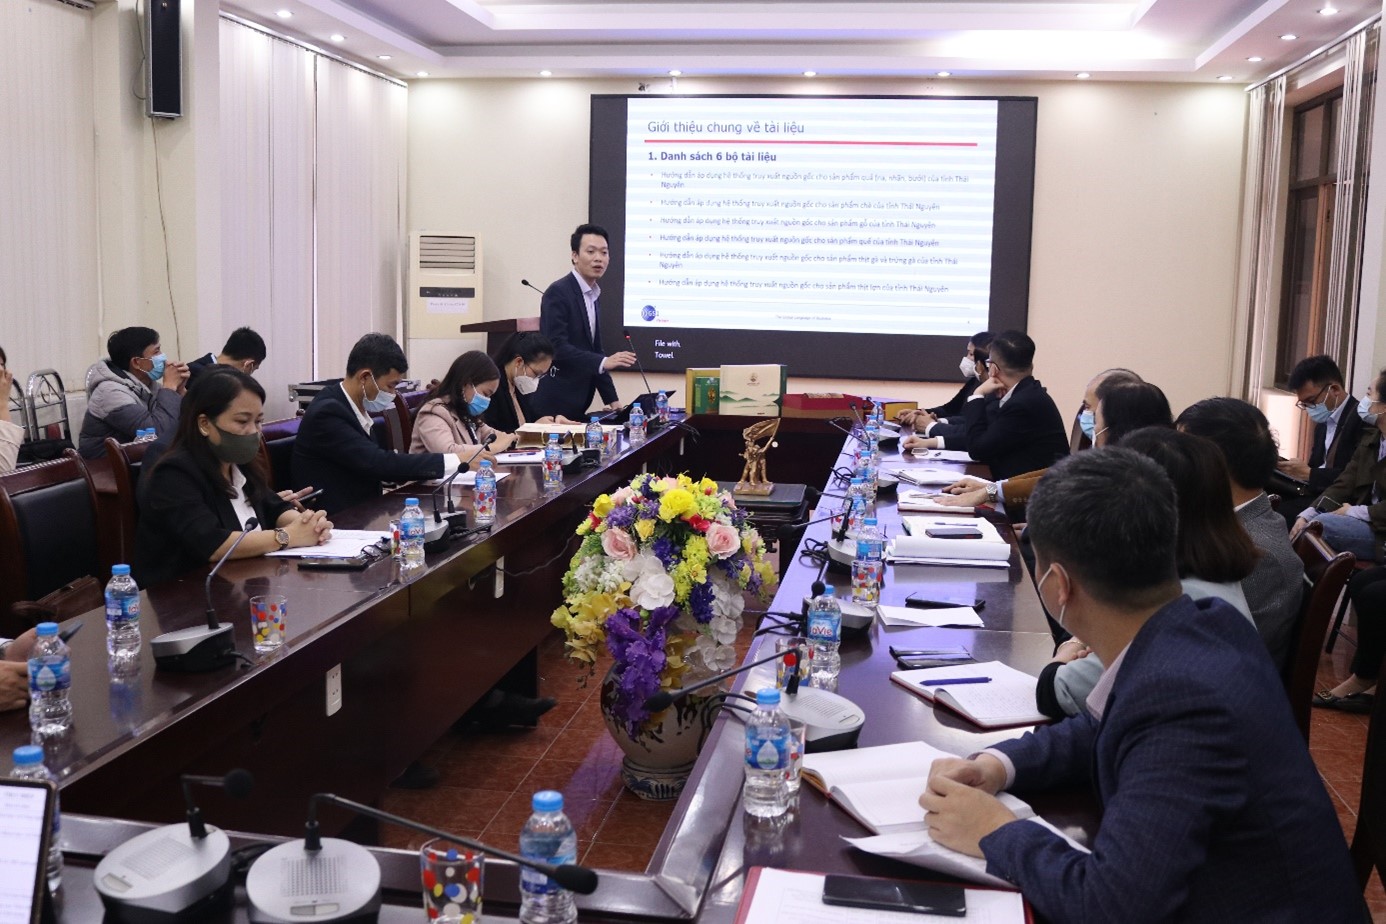 Giới thiệu bộ tài liệu hướng dẫn áp dụng hệ thống truy xuất nguồn gốc cho 06 sản phẩm nông nghiệp chủ lực tỉnh Thái Nguyên